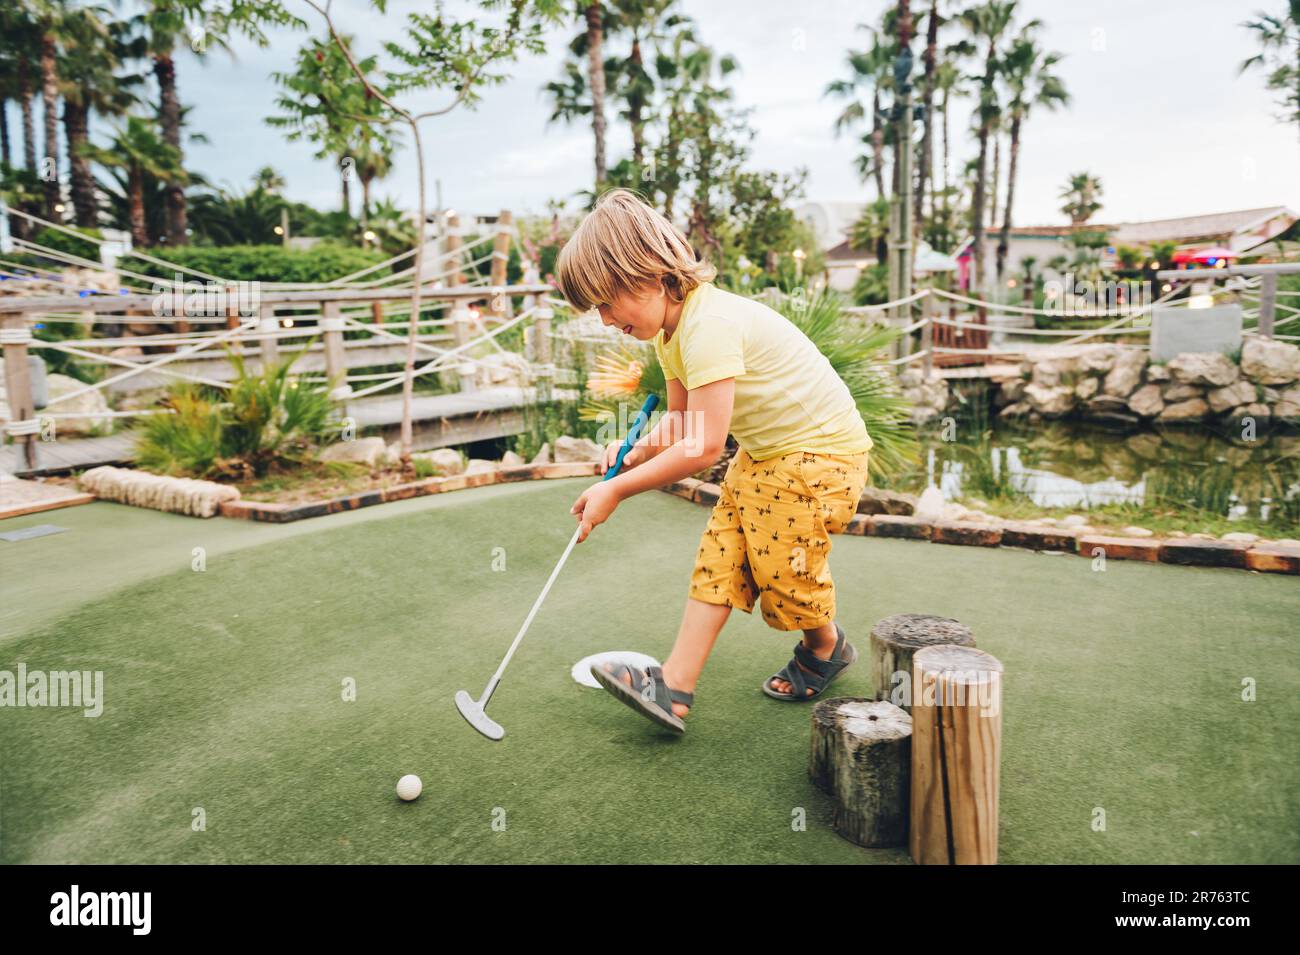 Funny kid boy playing mini golf, child enjoying summer vacation Stock Photo